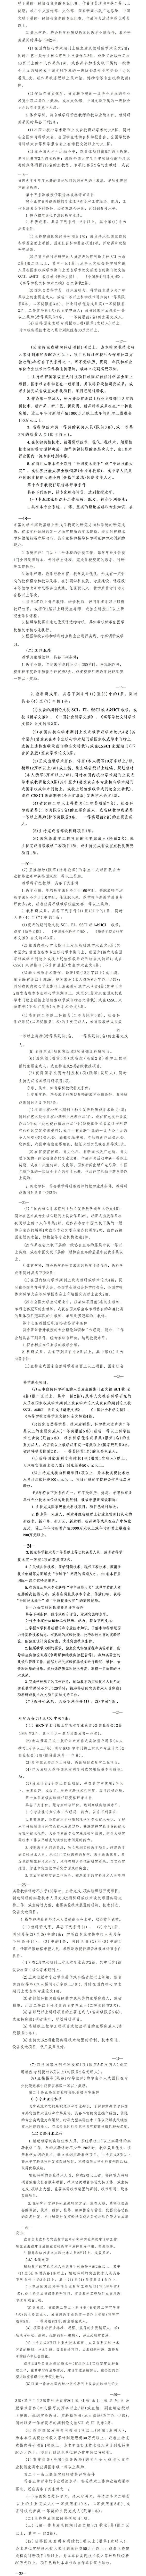 澳网官方网站·「中国」官方网站《高校教师（实验人员）职称评审办法》、《自主评审工作实施方案》_02